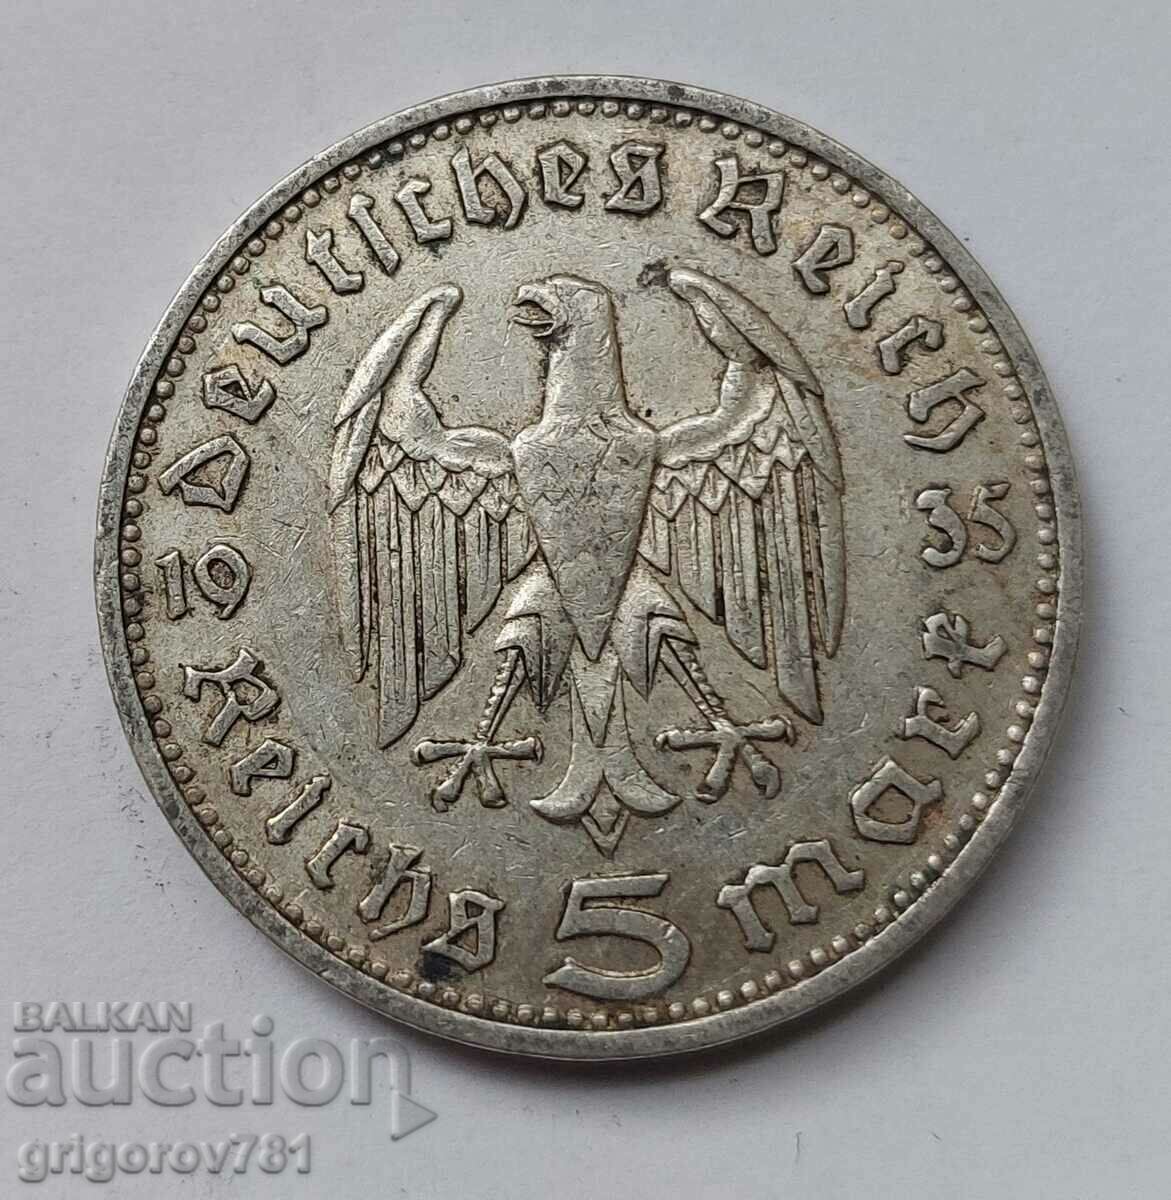 Moneda de argint 5 marci Germania 1935 D III Reich #58